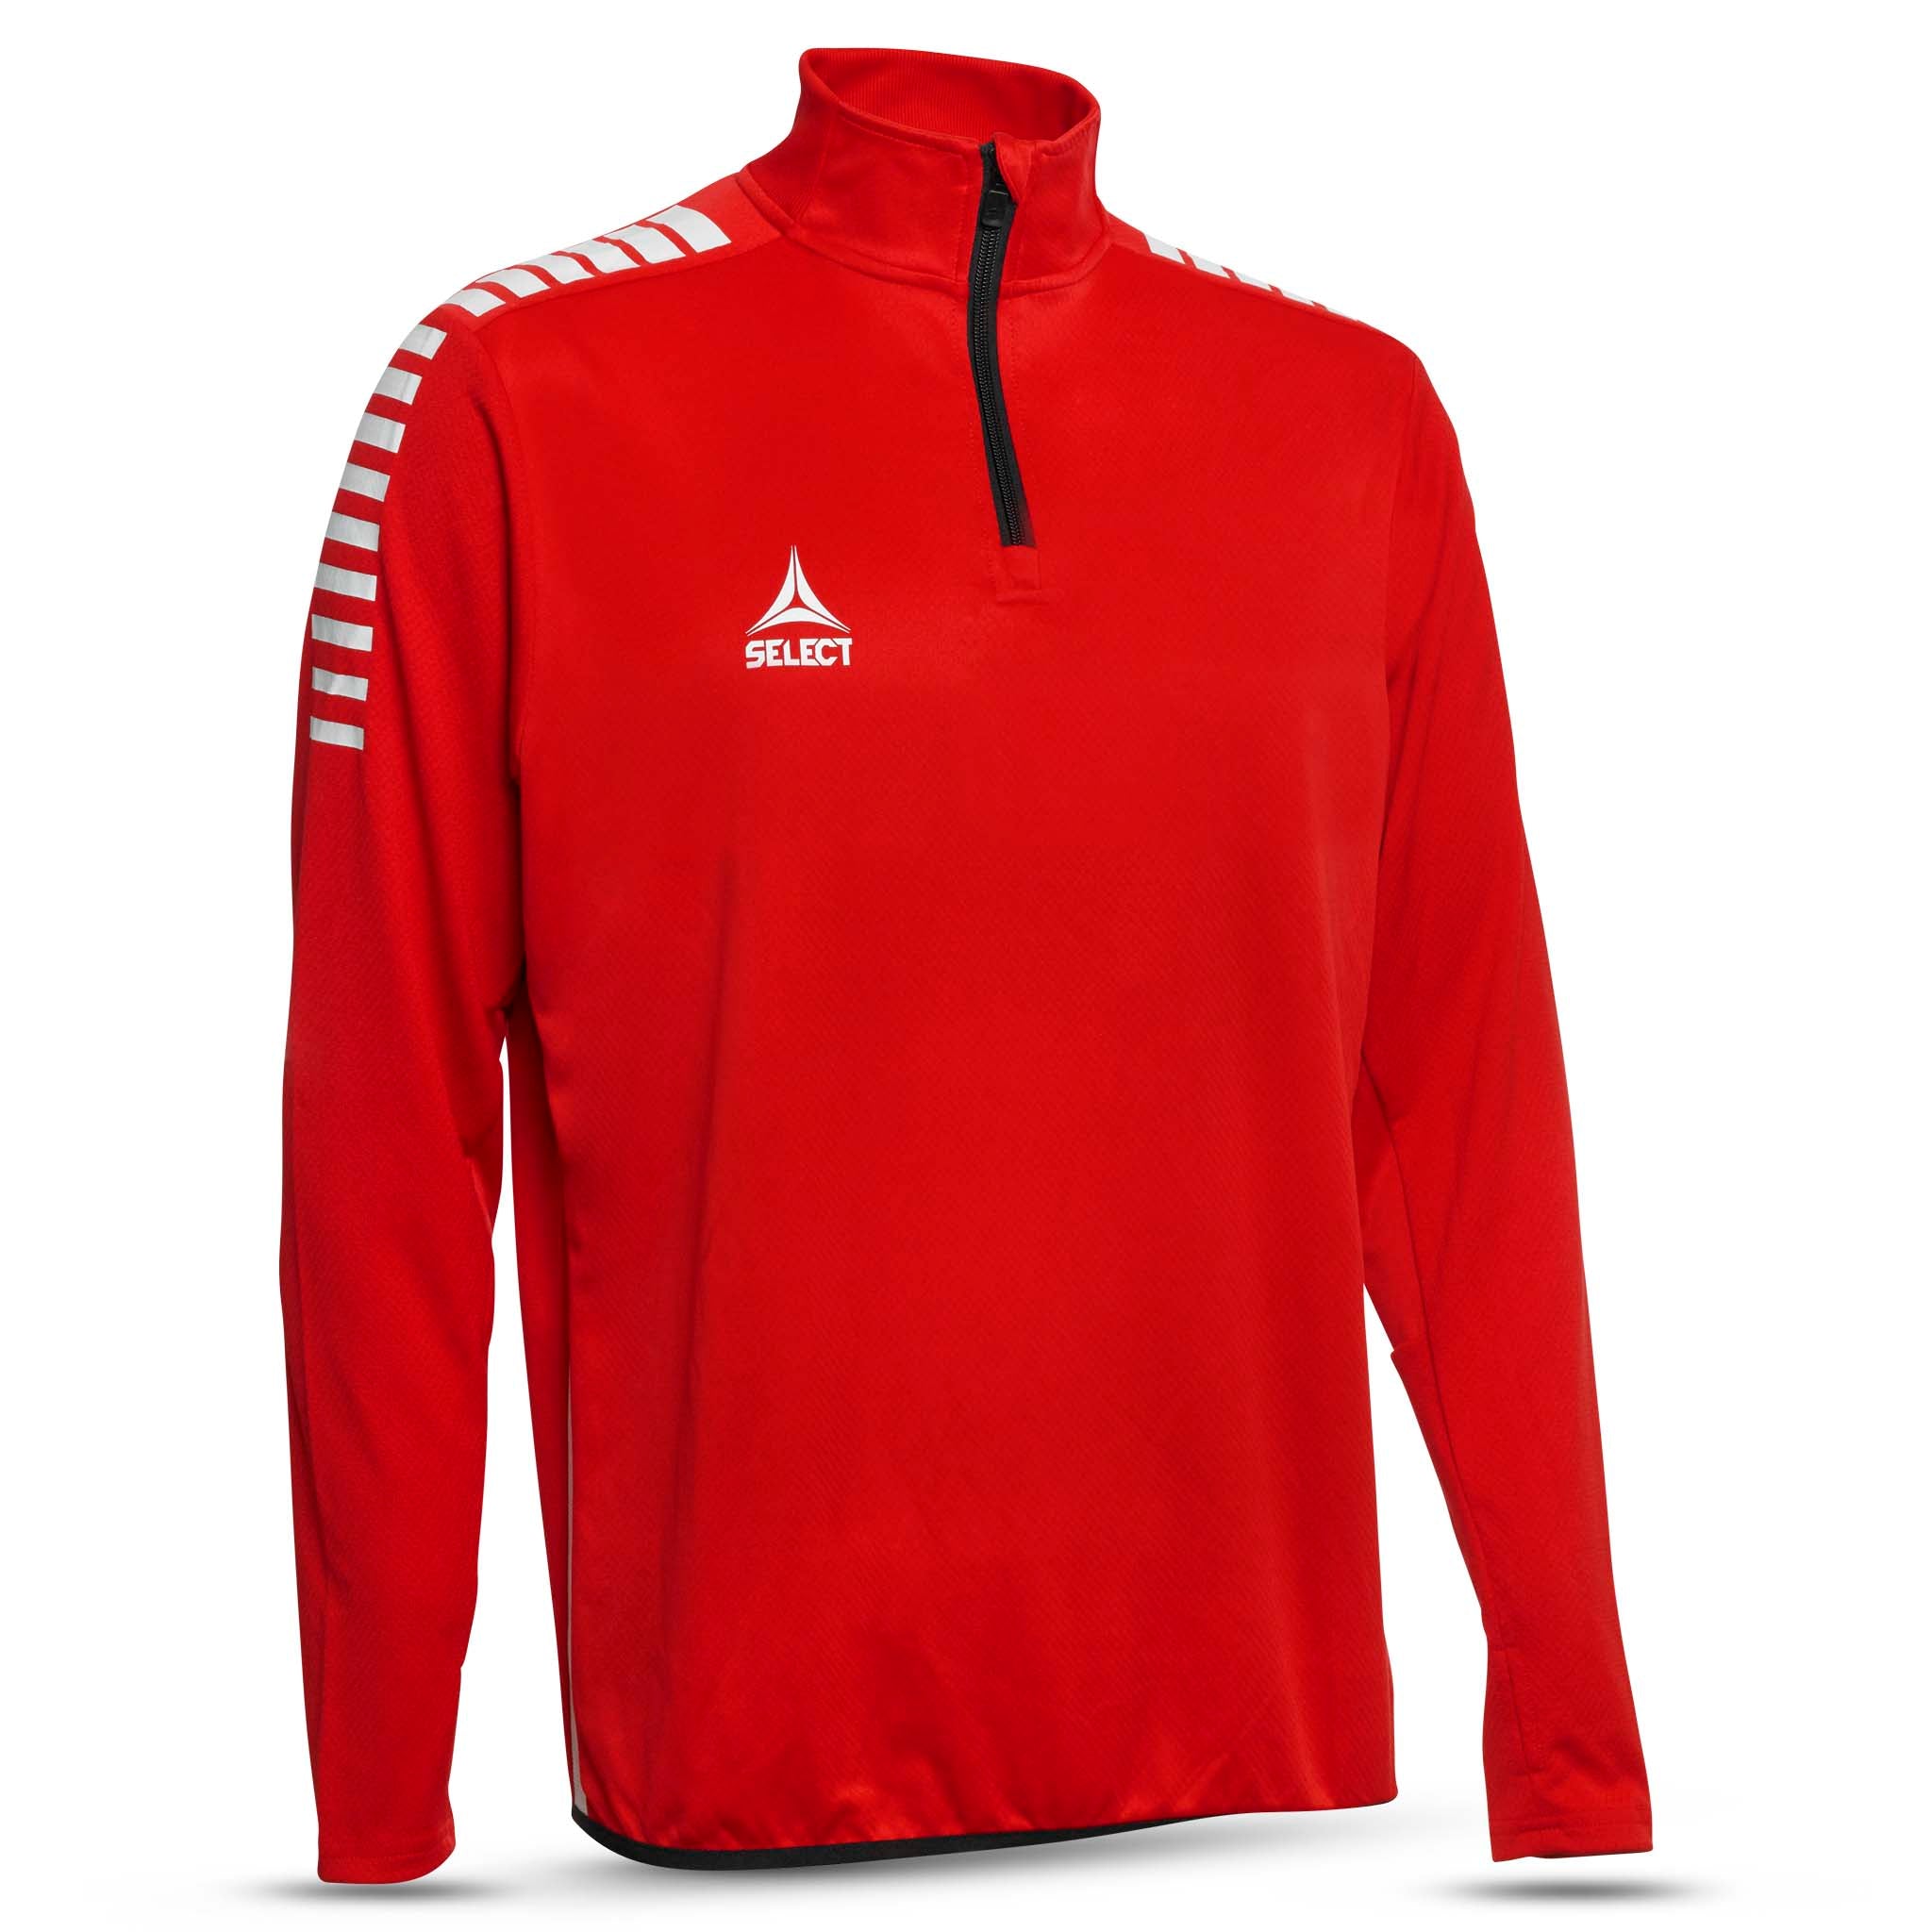 Sweatshirt för träning - Monaco, ungdom #färg_röd